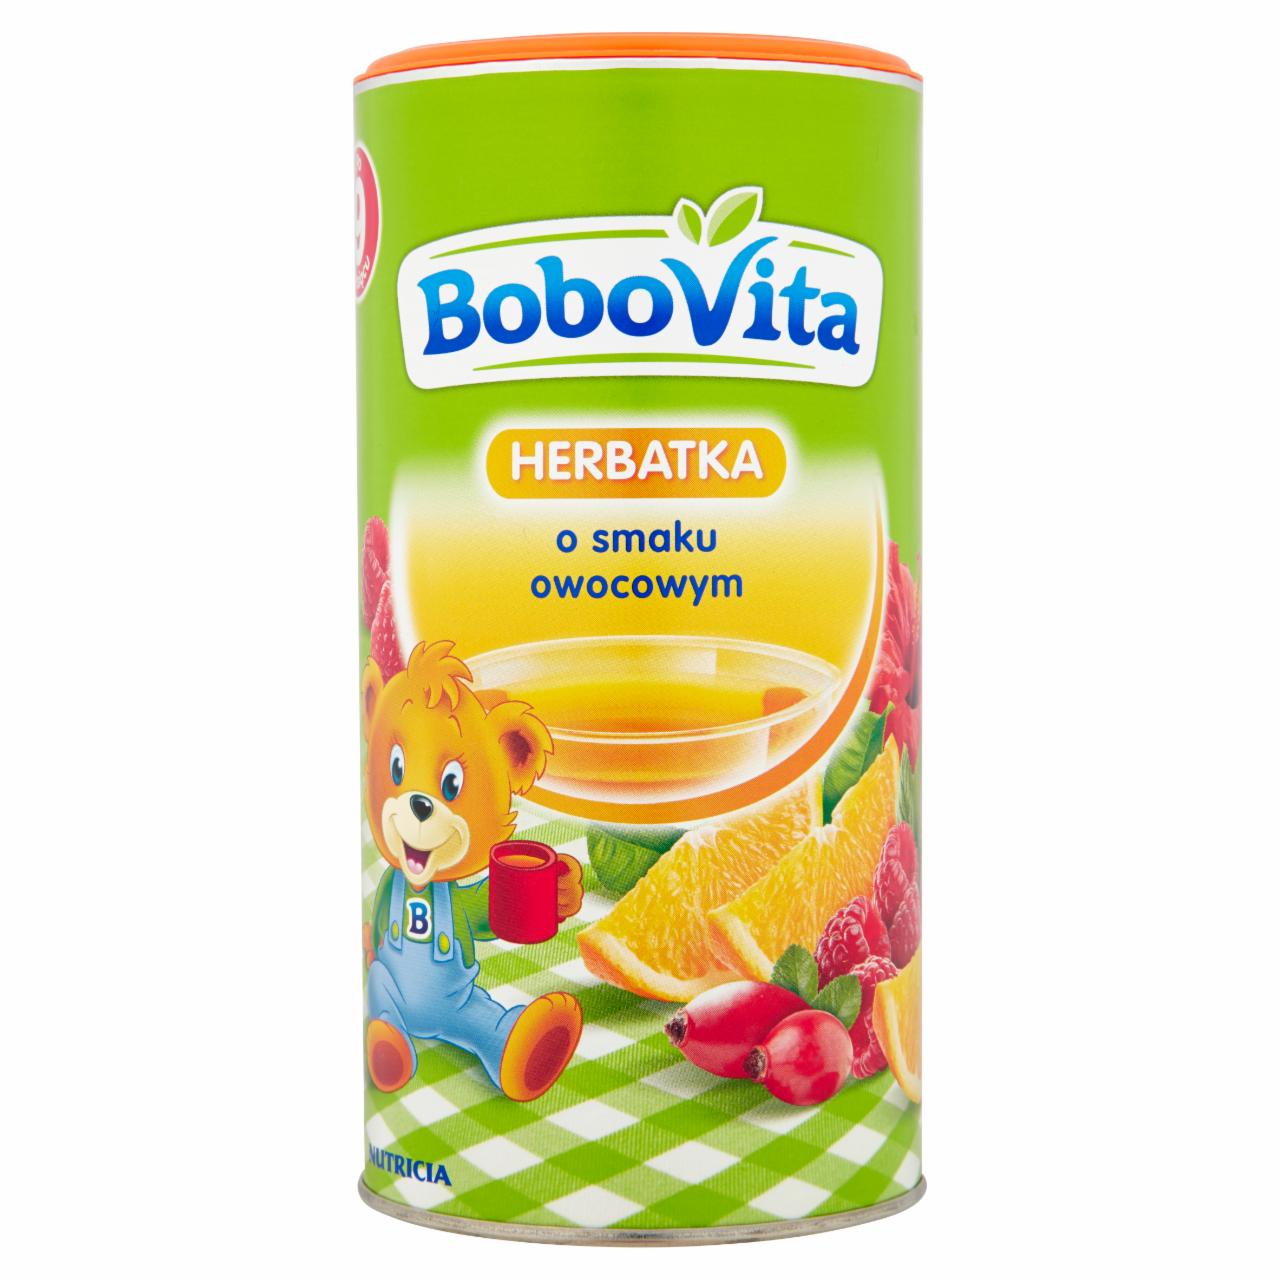 Zdjęcia - BoboVita Herbatka o smaku owocowym po 9 miesiącu 200 g